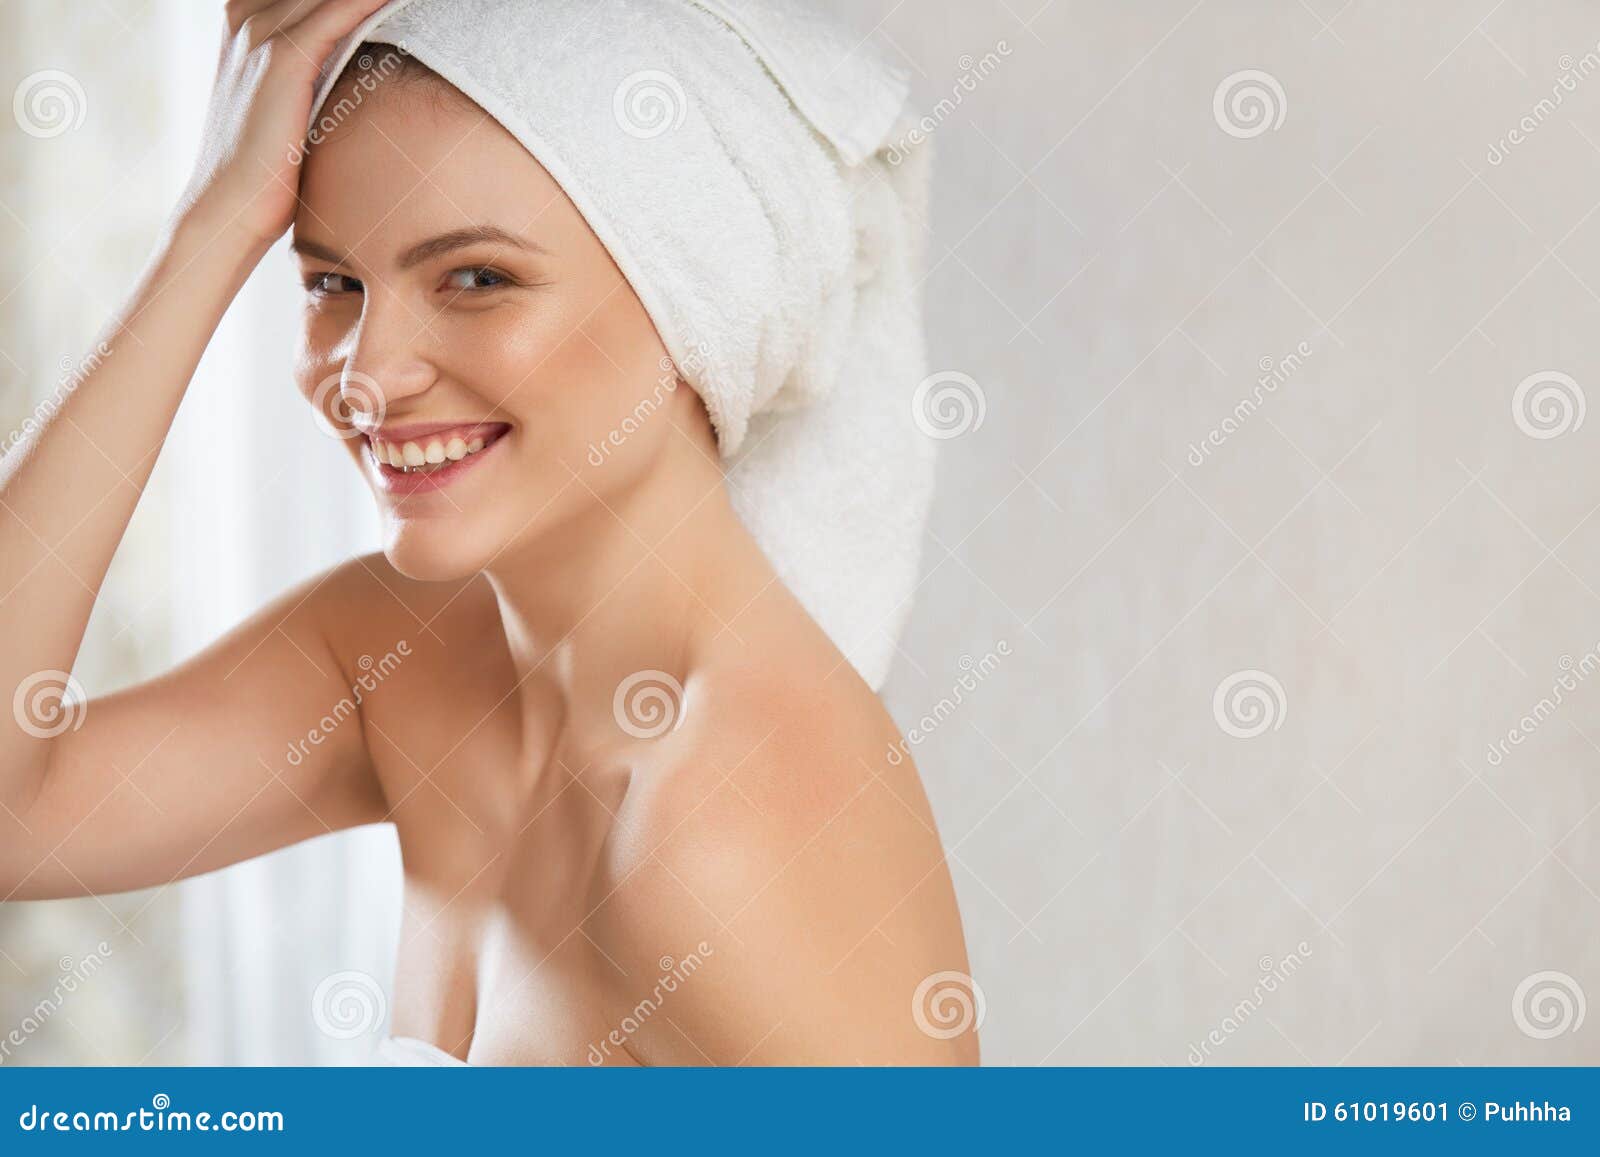 Ходит в полотенце. Девушка в полотенце. Полотенце для волос. Фотомодели в полотенцах на голове. Девушка в полотенце Эстетика.